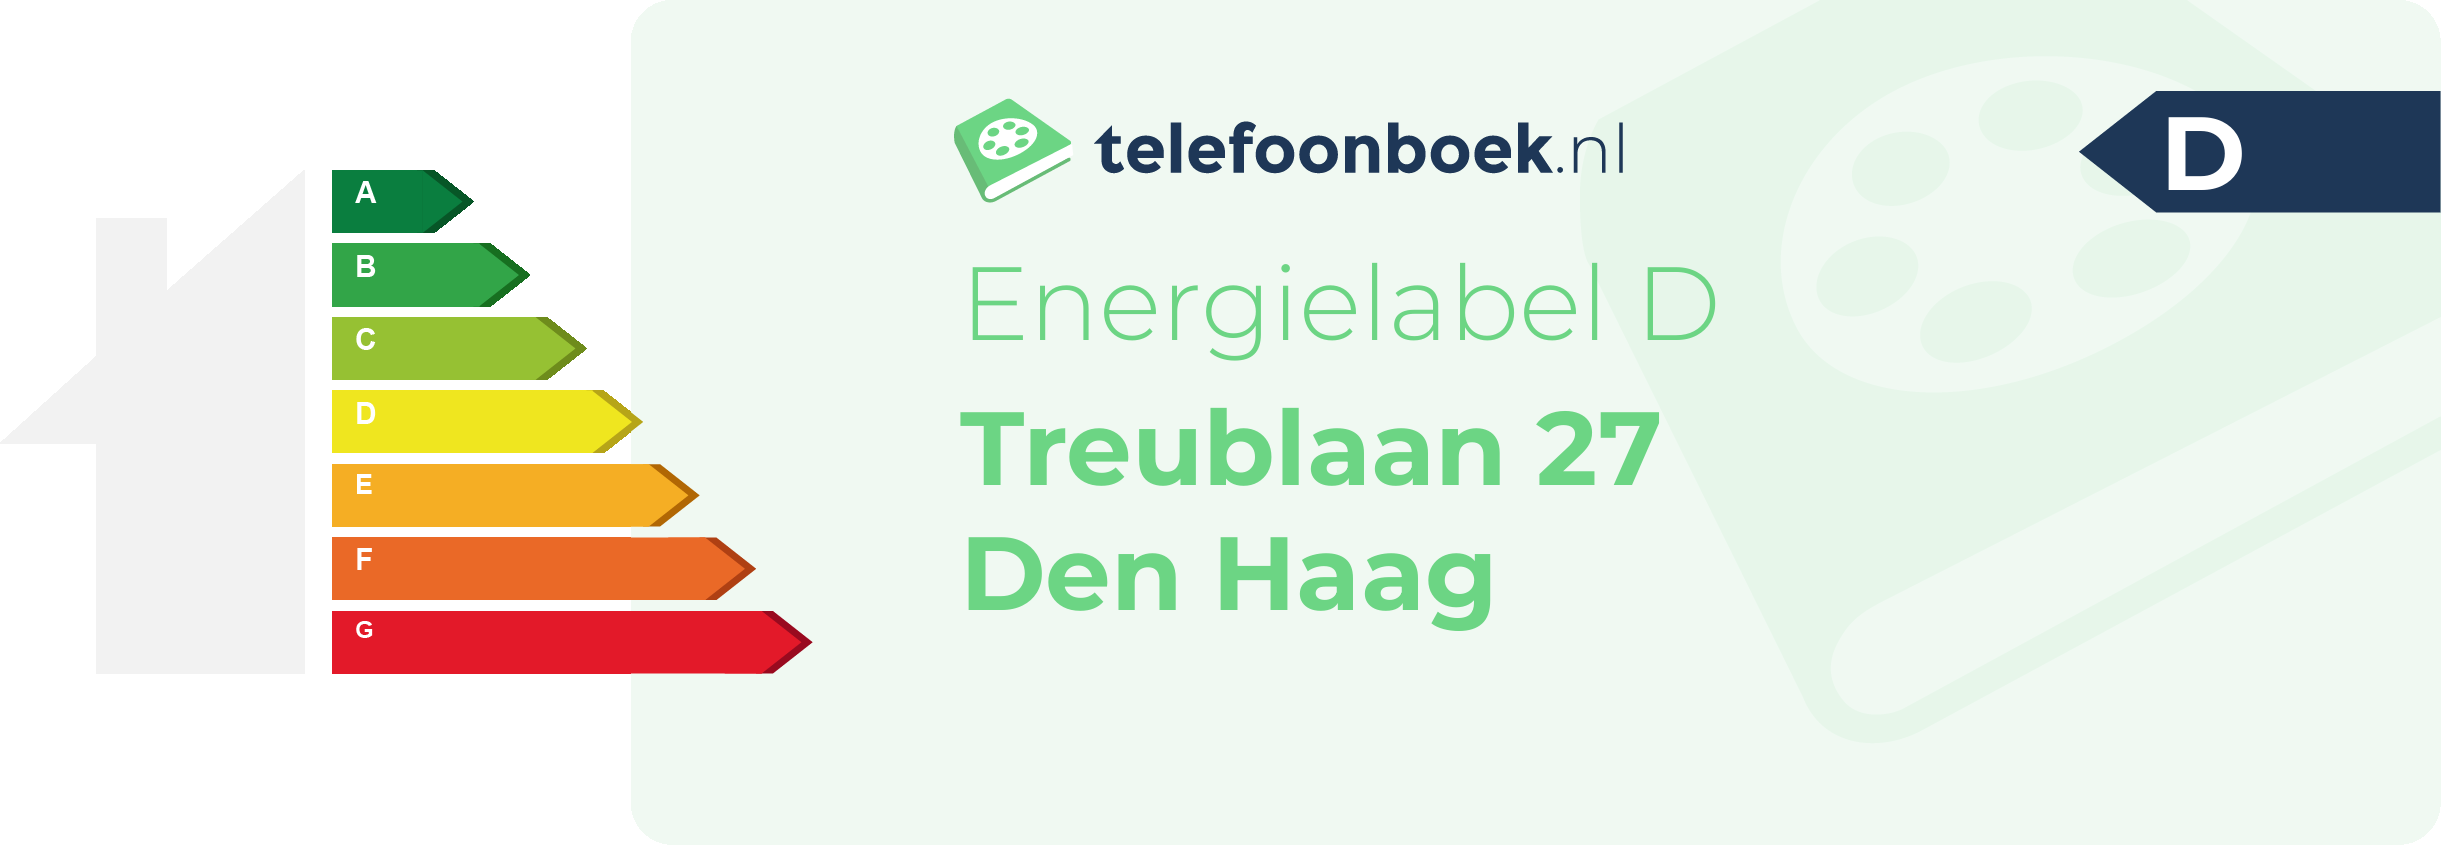 Energielabel Treublaan 27 Den Haag